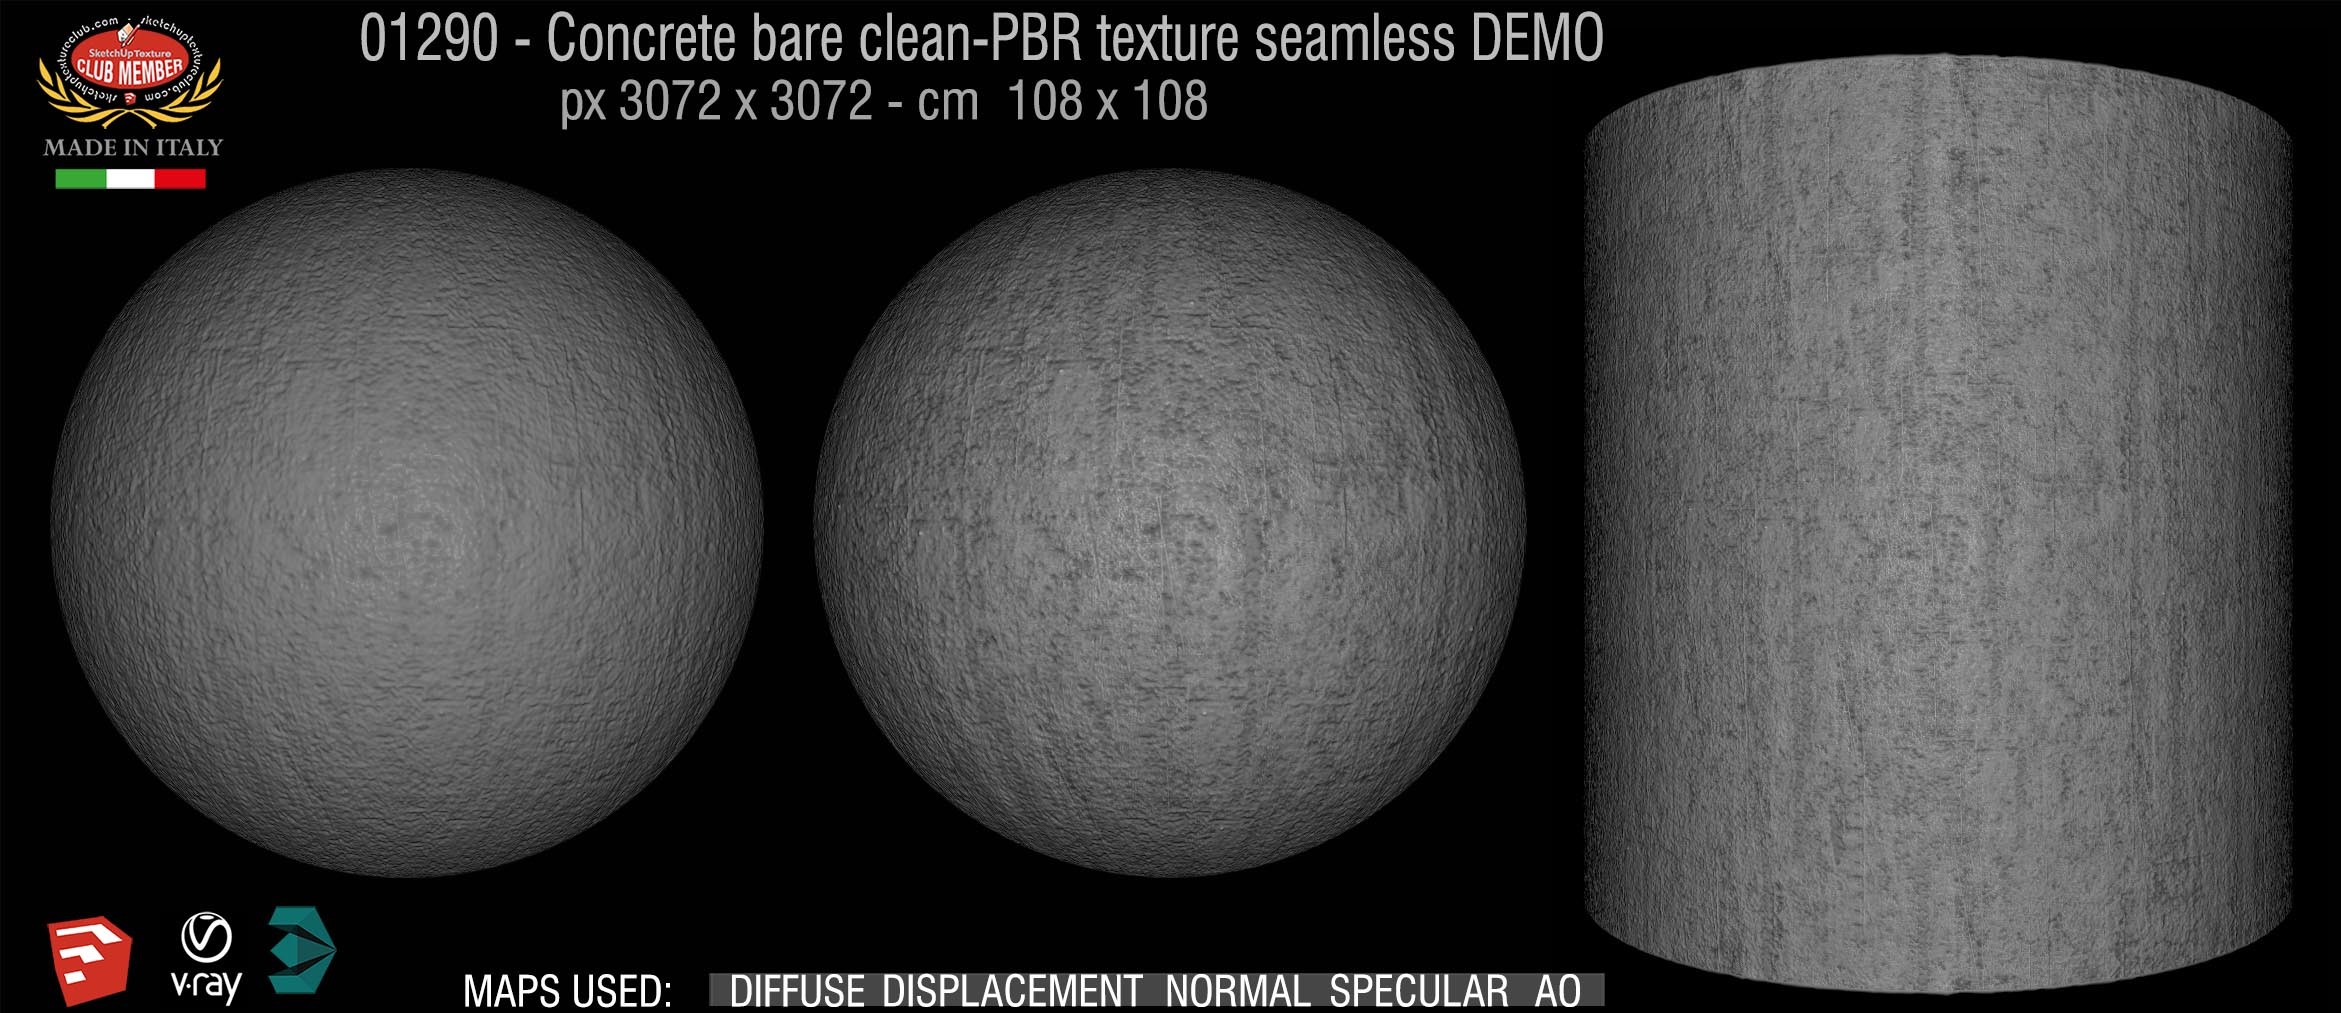 01290 Concrete bare clean-PBR texture seamless DEMO